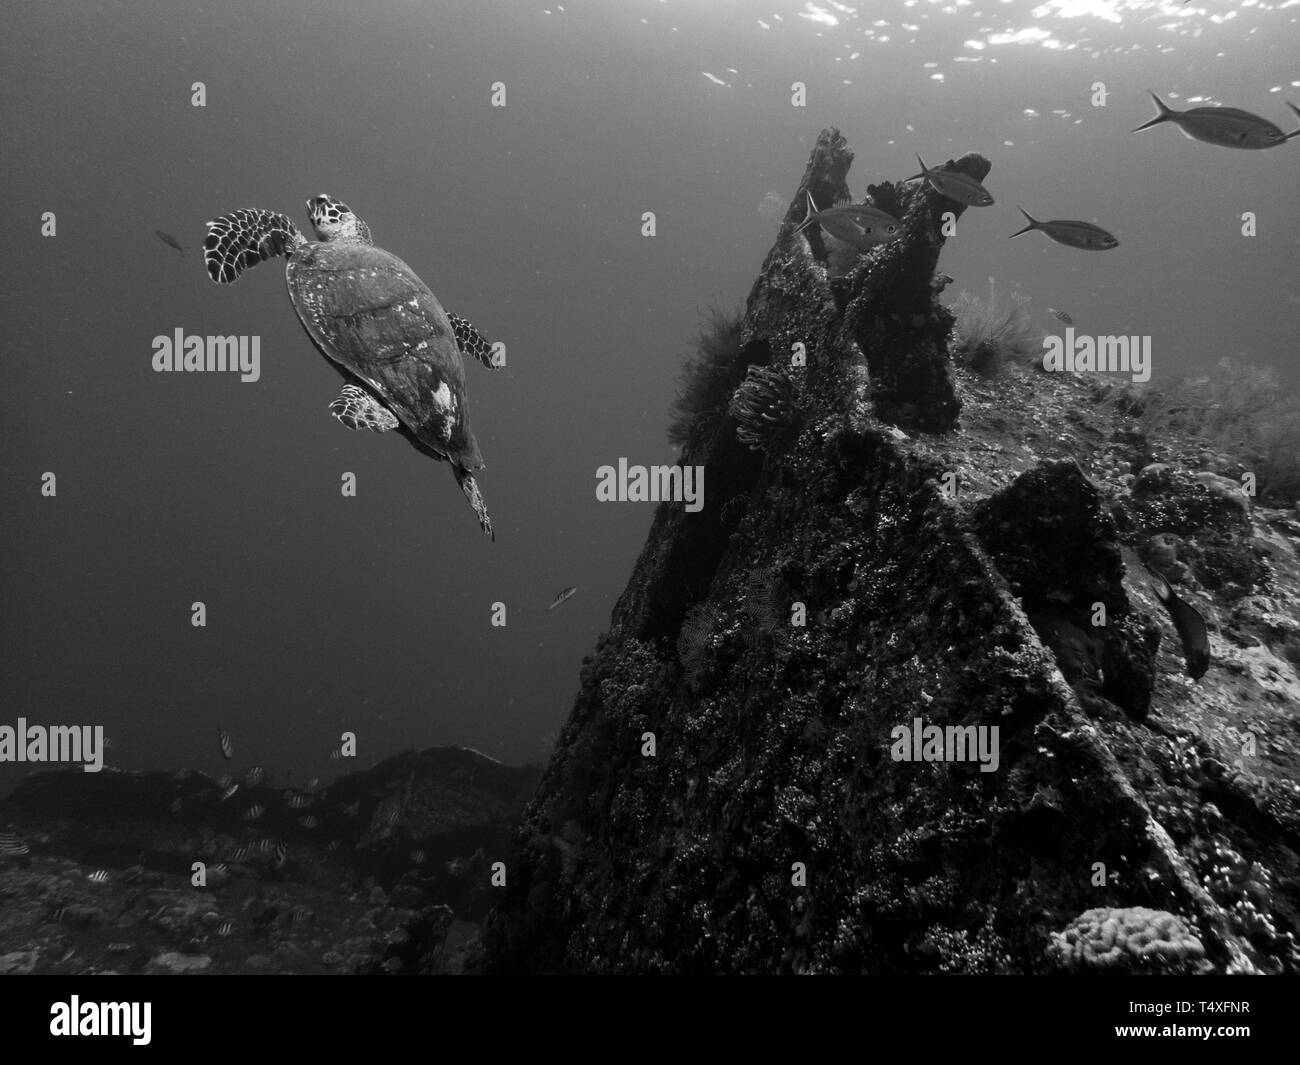 Sea turtle near the USS Liberty Ship Wreck in Tulamben, Bali, Indonesia Stock Photo